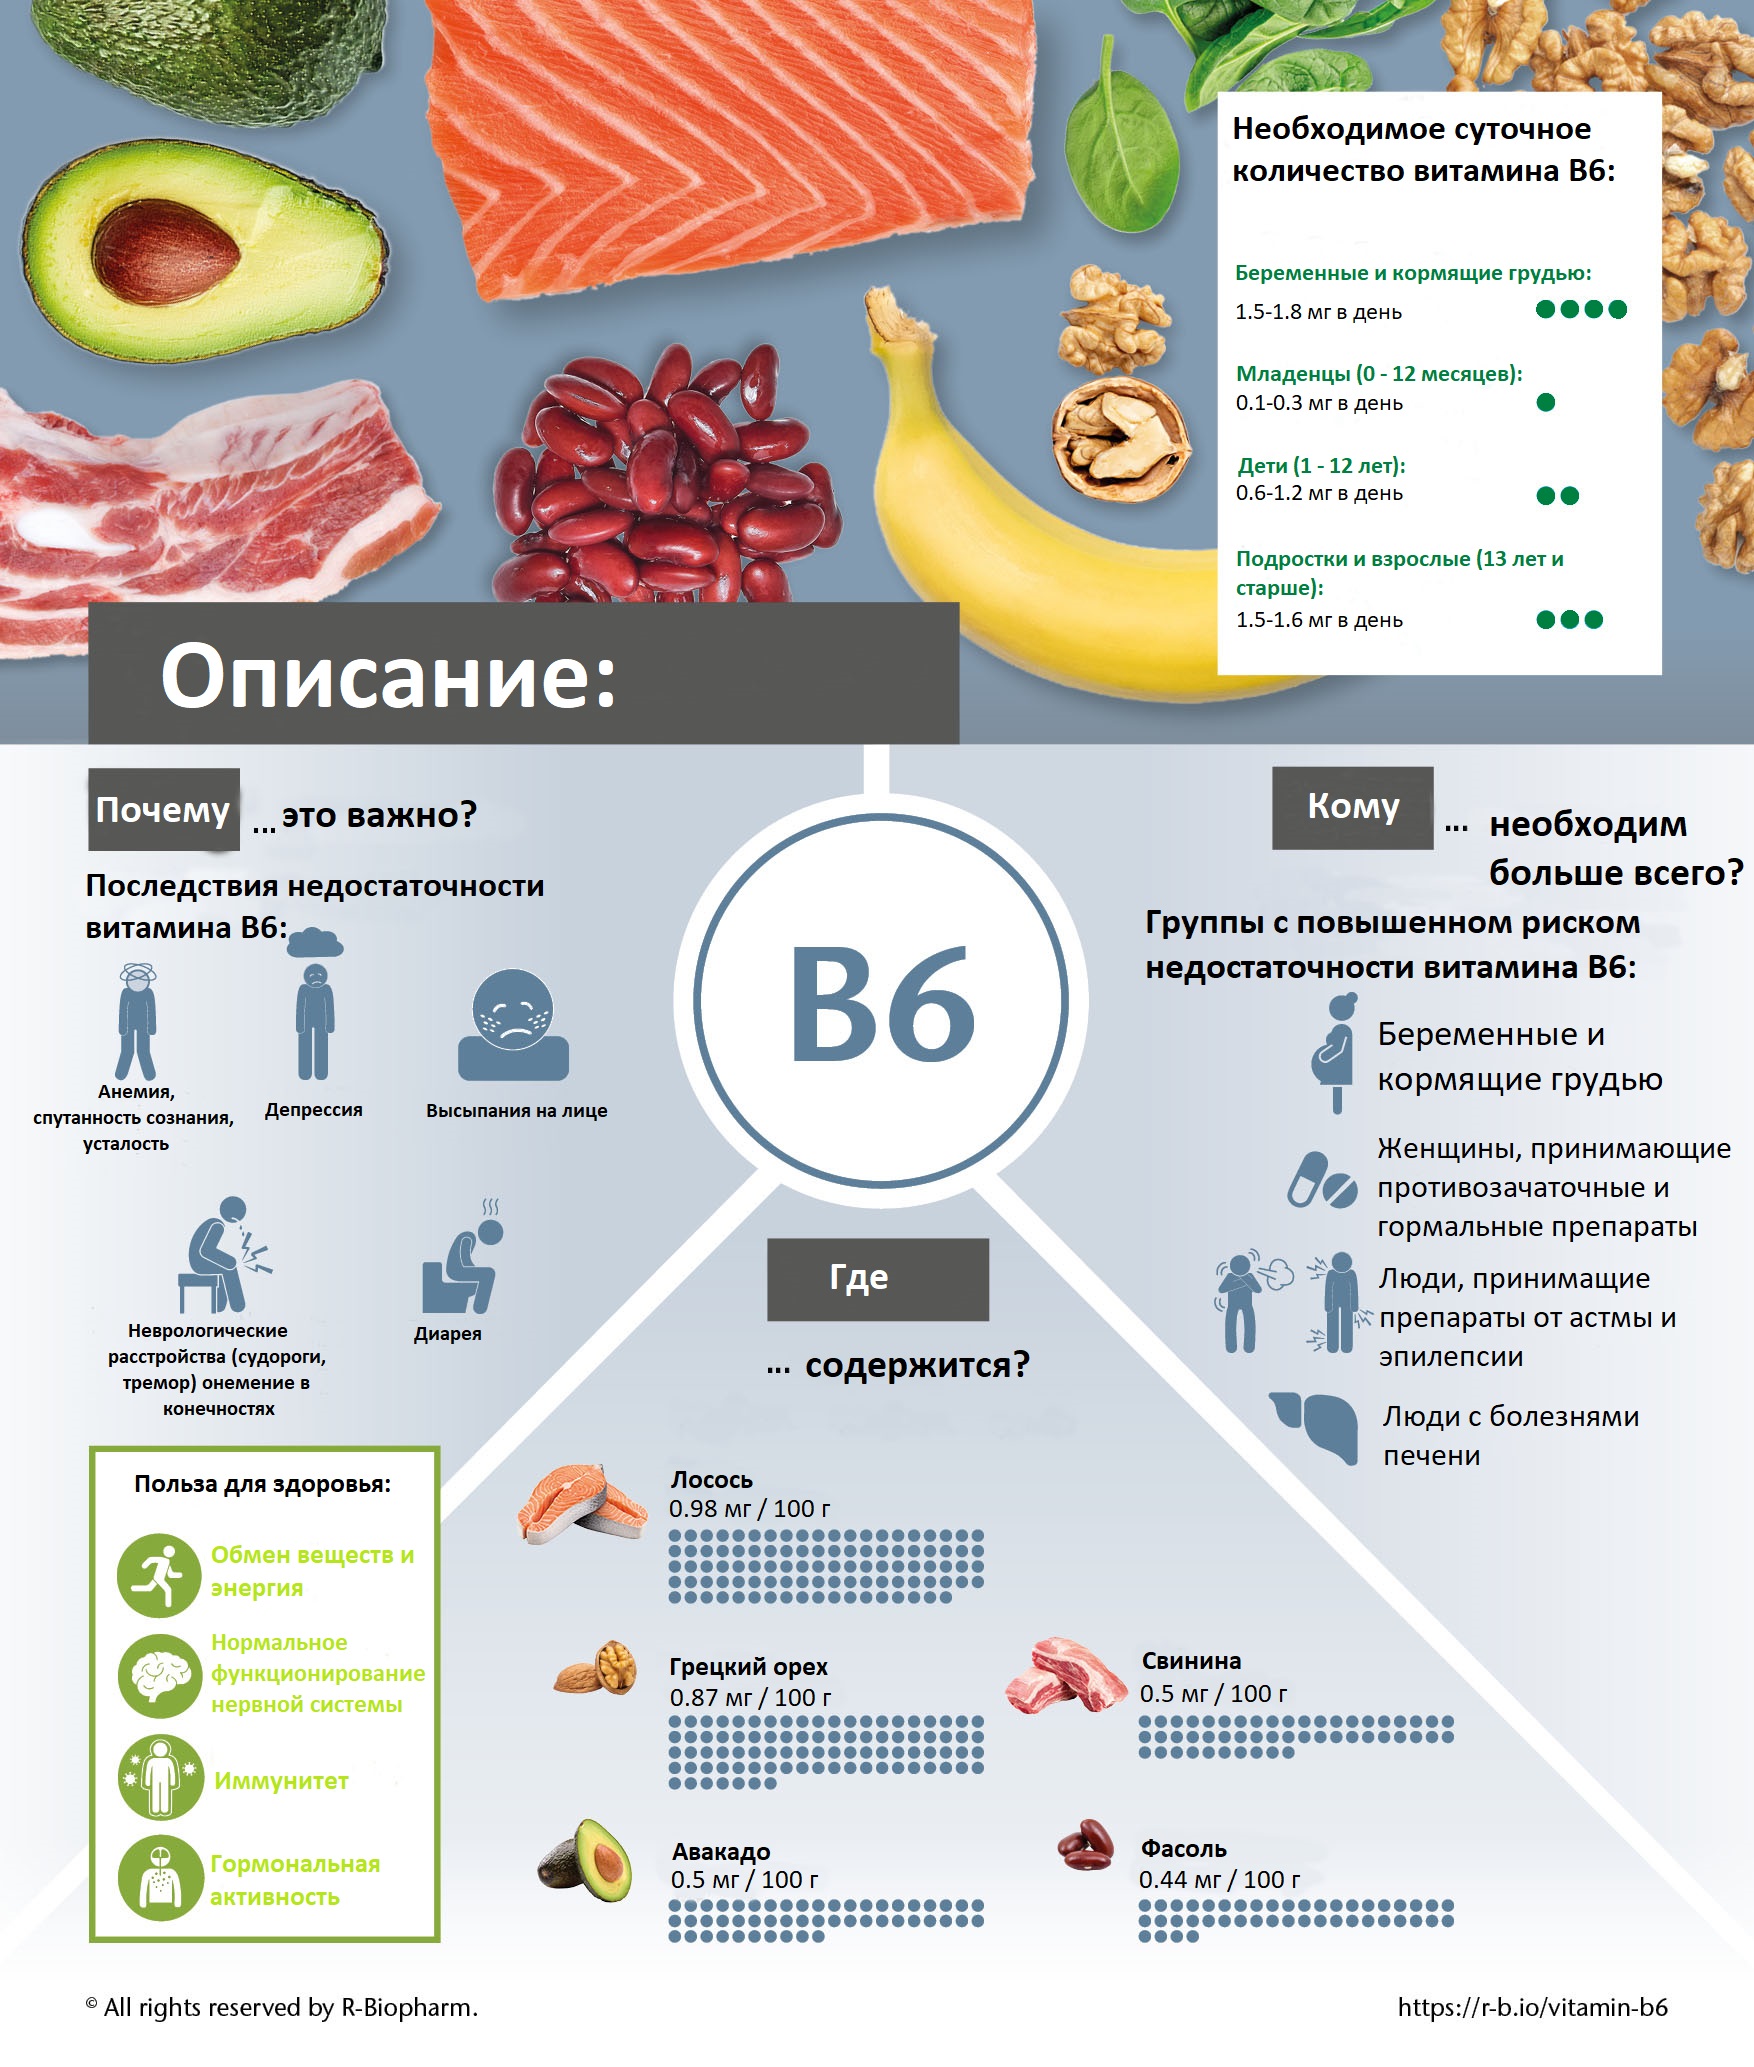 Купить Витамин В6 - влияние на организм в Минске и Беларуси